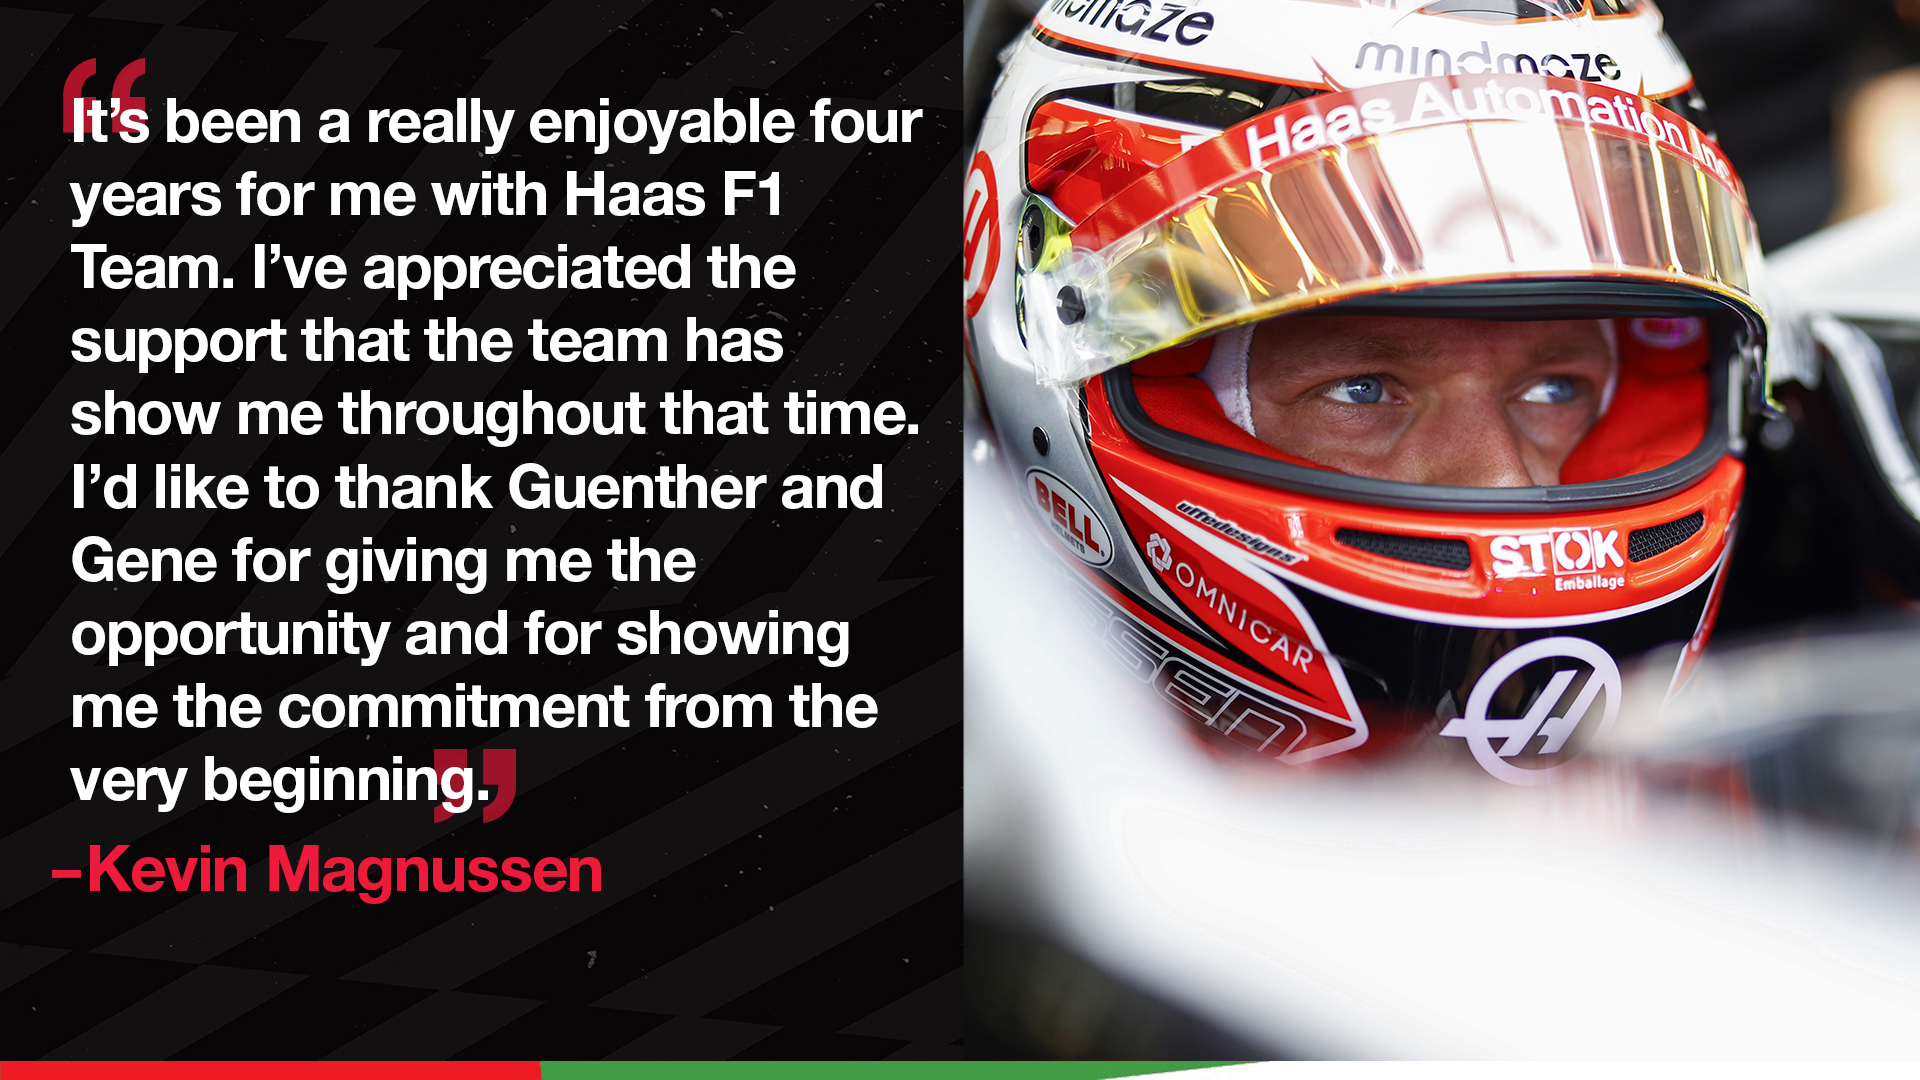 Khám phá những hình ảnh chân thật về đội đua Haas F1 Team tại giải đua xe Formula 1 nổi tiếng. MoneyGram, một trong những đối tác đáng tin cậy của đội đua, sẽ mang đến cho bạn những giây phút hồi hộp khi theo dõi đua xe đỉnh cao. 